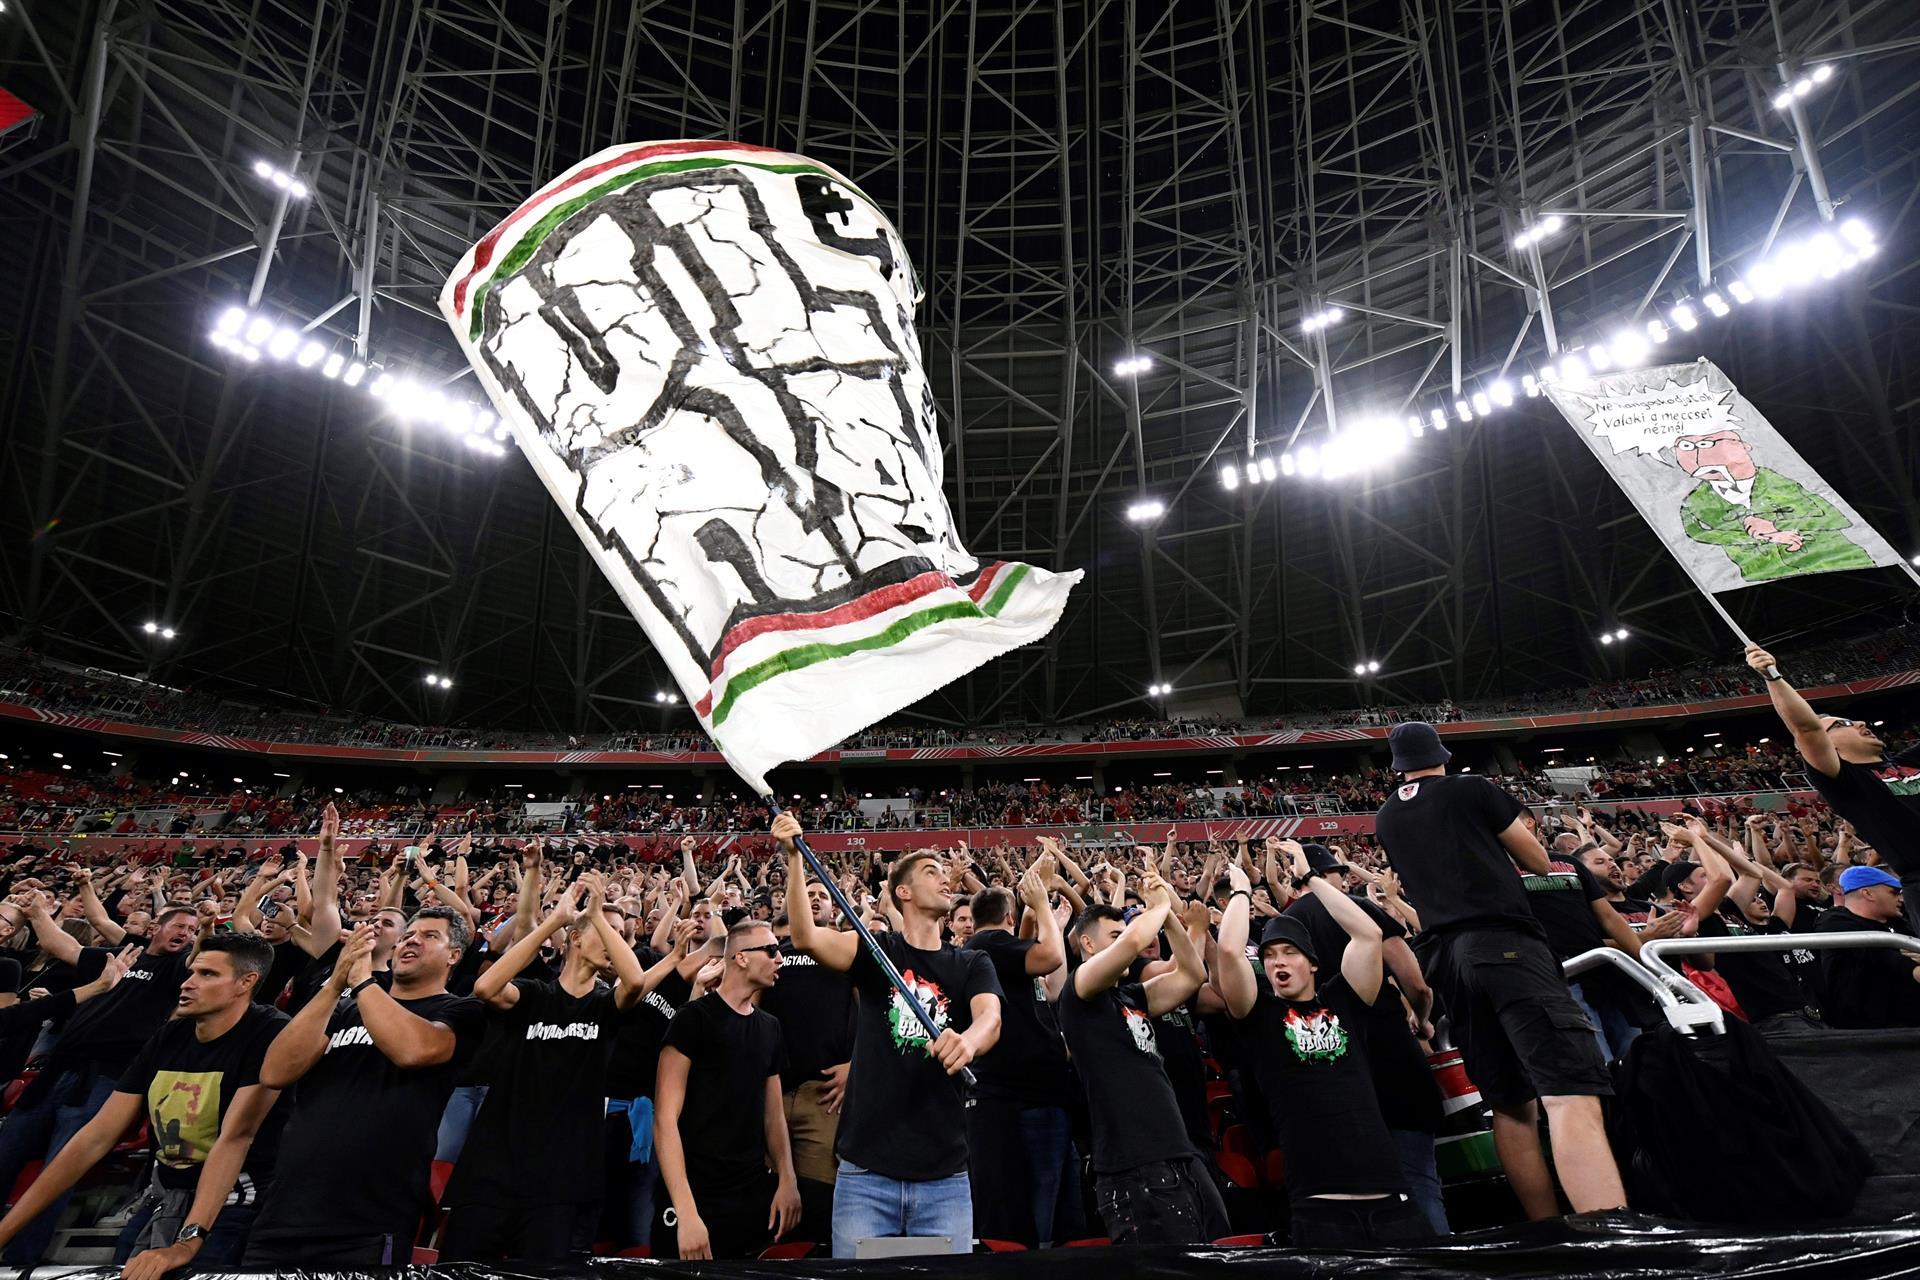 Fifa pune Hungria por comportamento racista de torcida em jogo das Eliminatórias